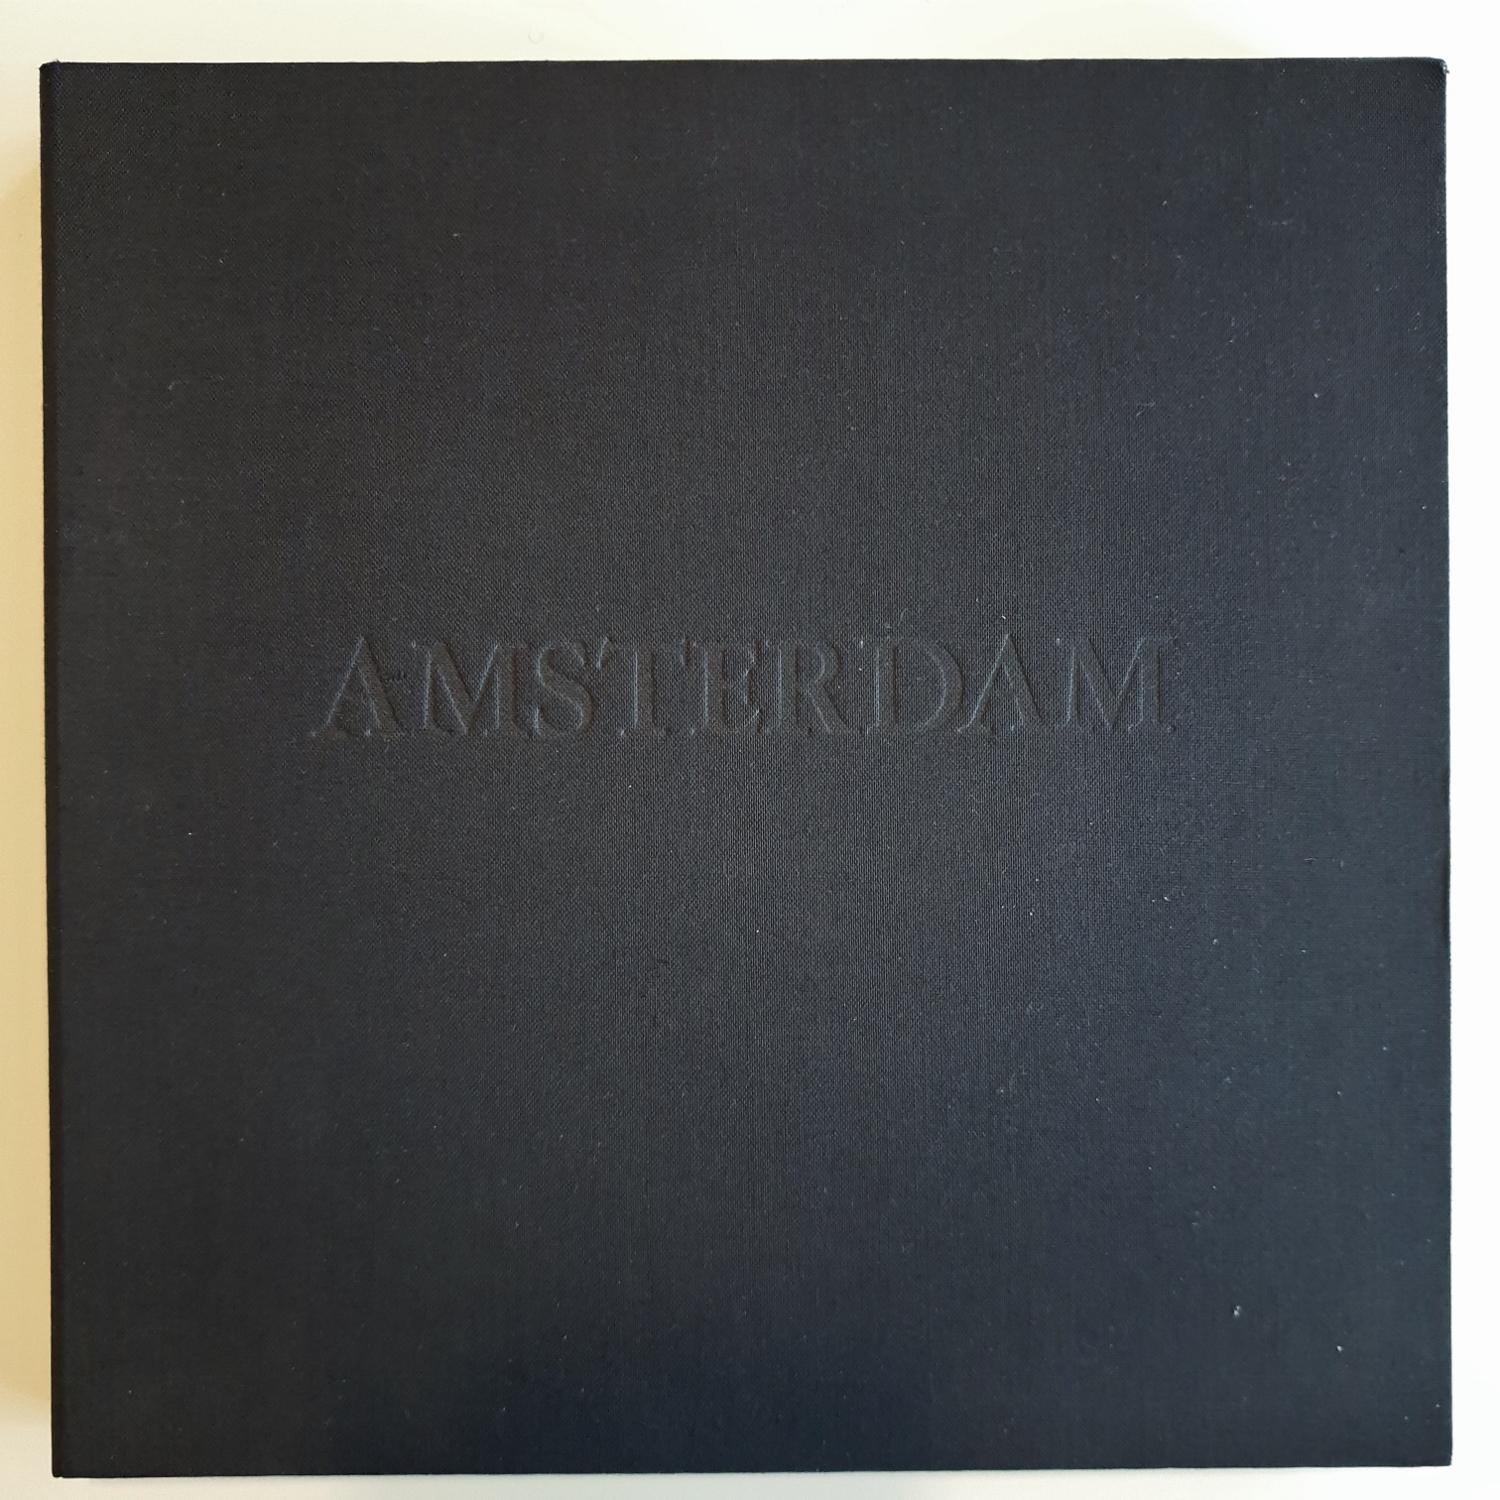 Amsterdam  Boîte de collection 3/50 avec dix impressions aquatintes à l'eau-forte en noir et blanc  - Print de Olivier Julia